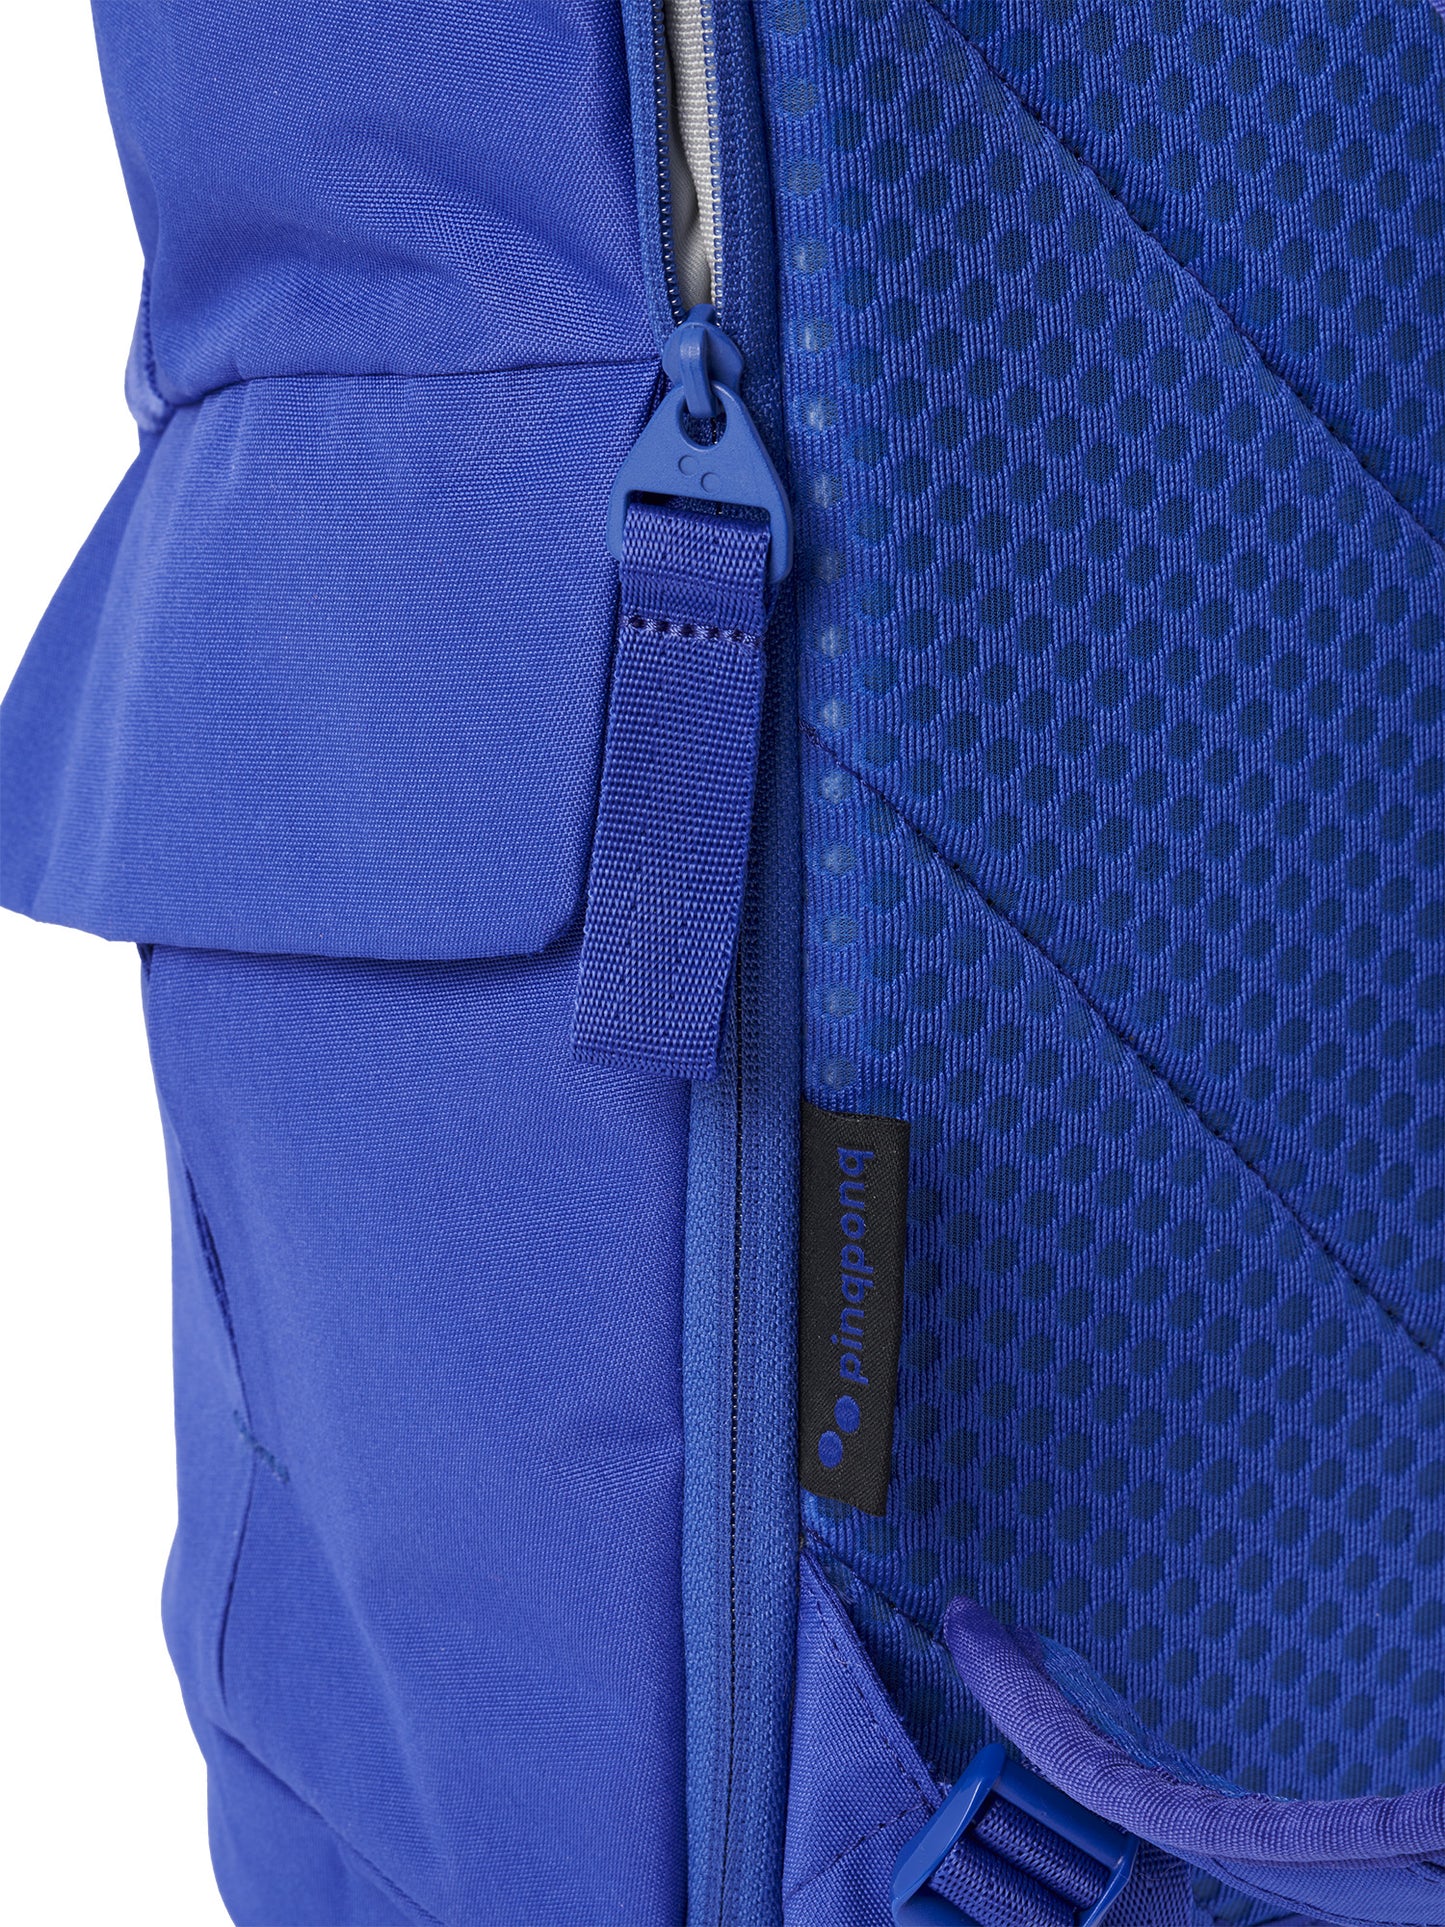 pinqponq - KROSS  Daypack Plus Poppy Blue